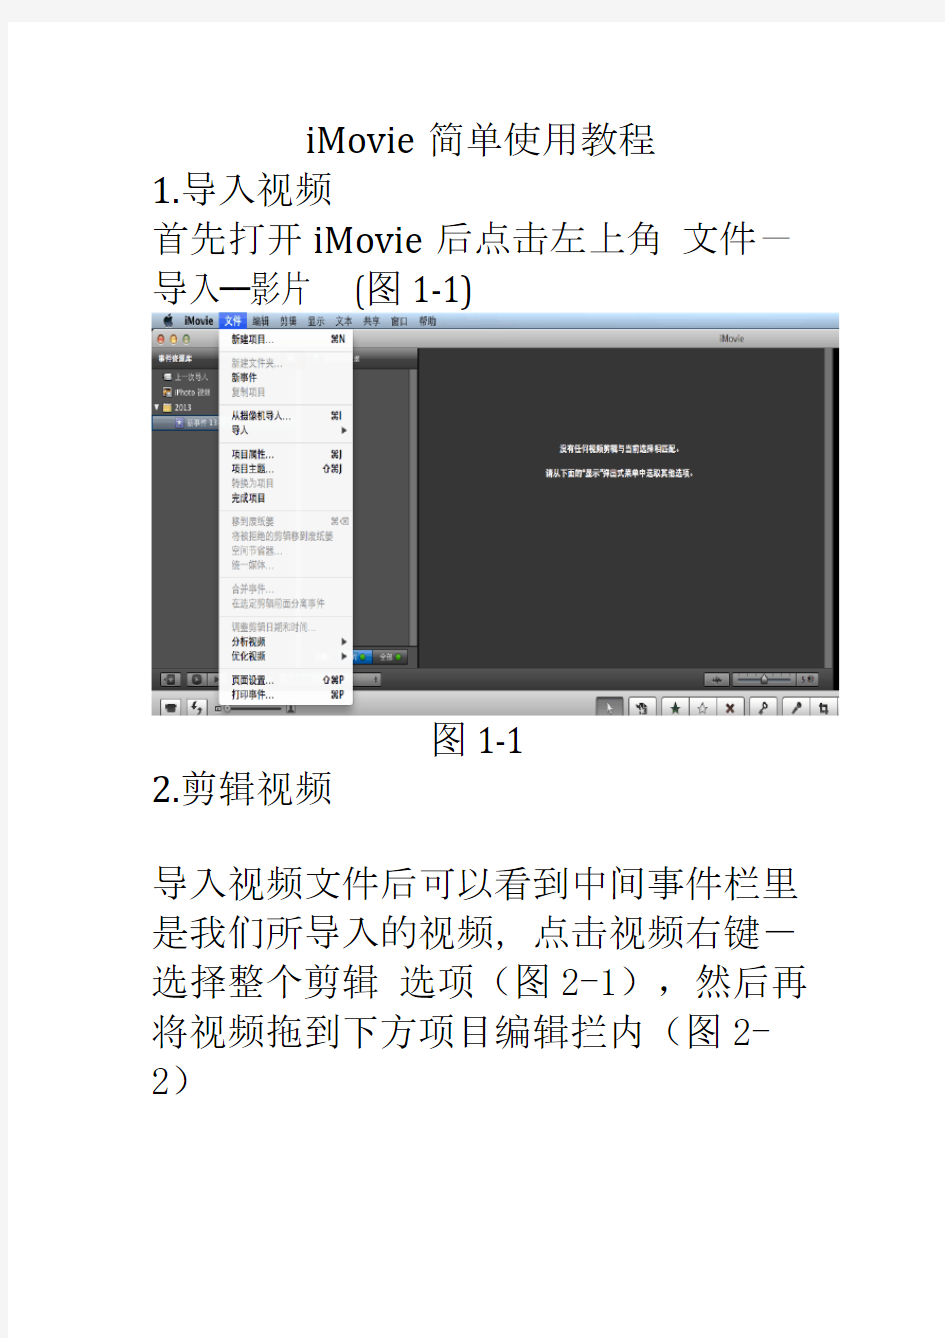 iMovie简单使用教程